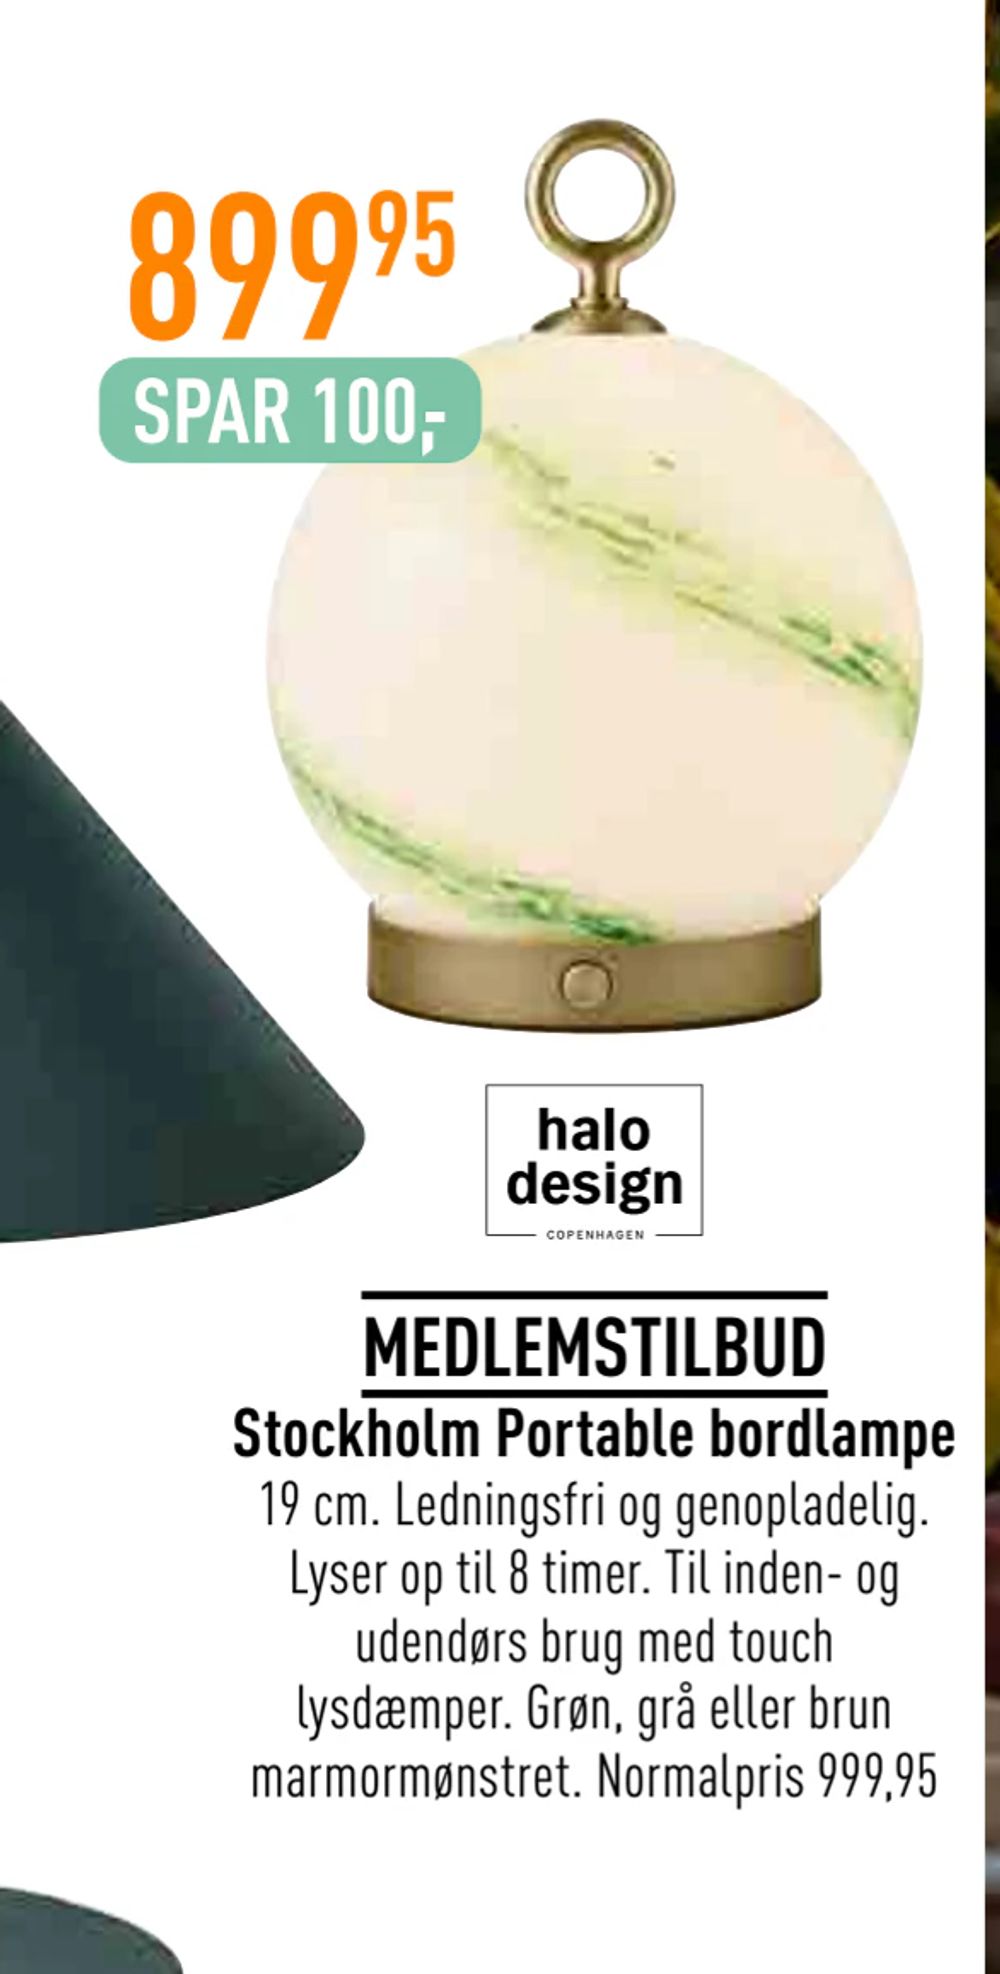 Tilbud på Stockholm Portable bordlampe fra Imerco til 899,95 kr.